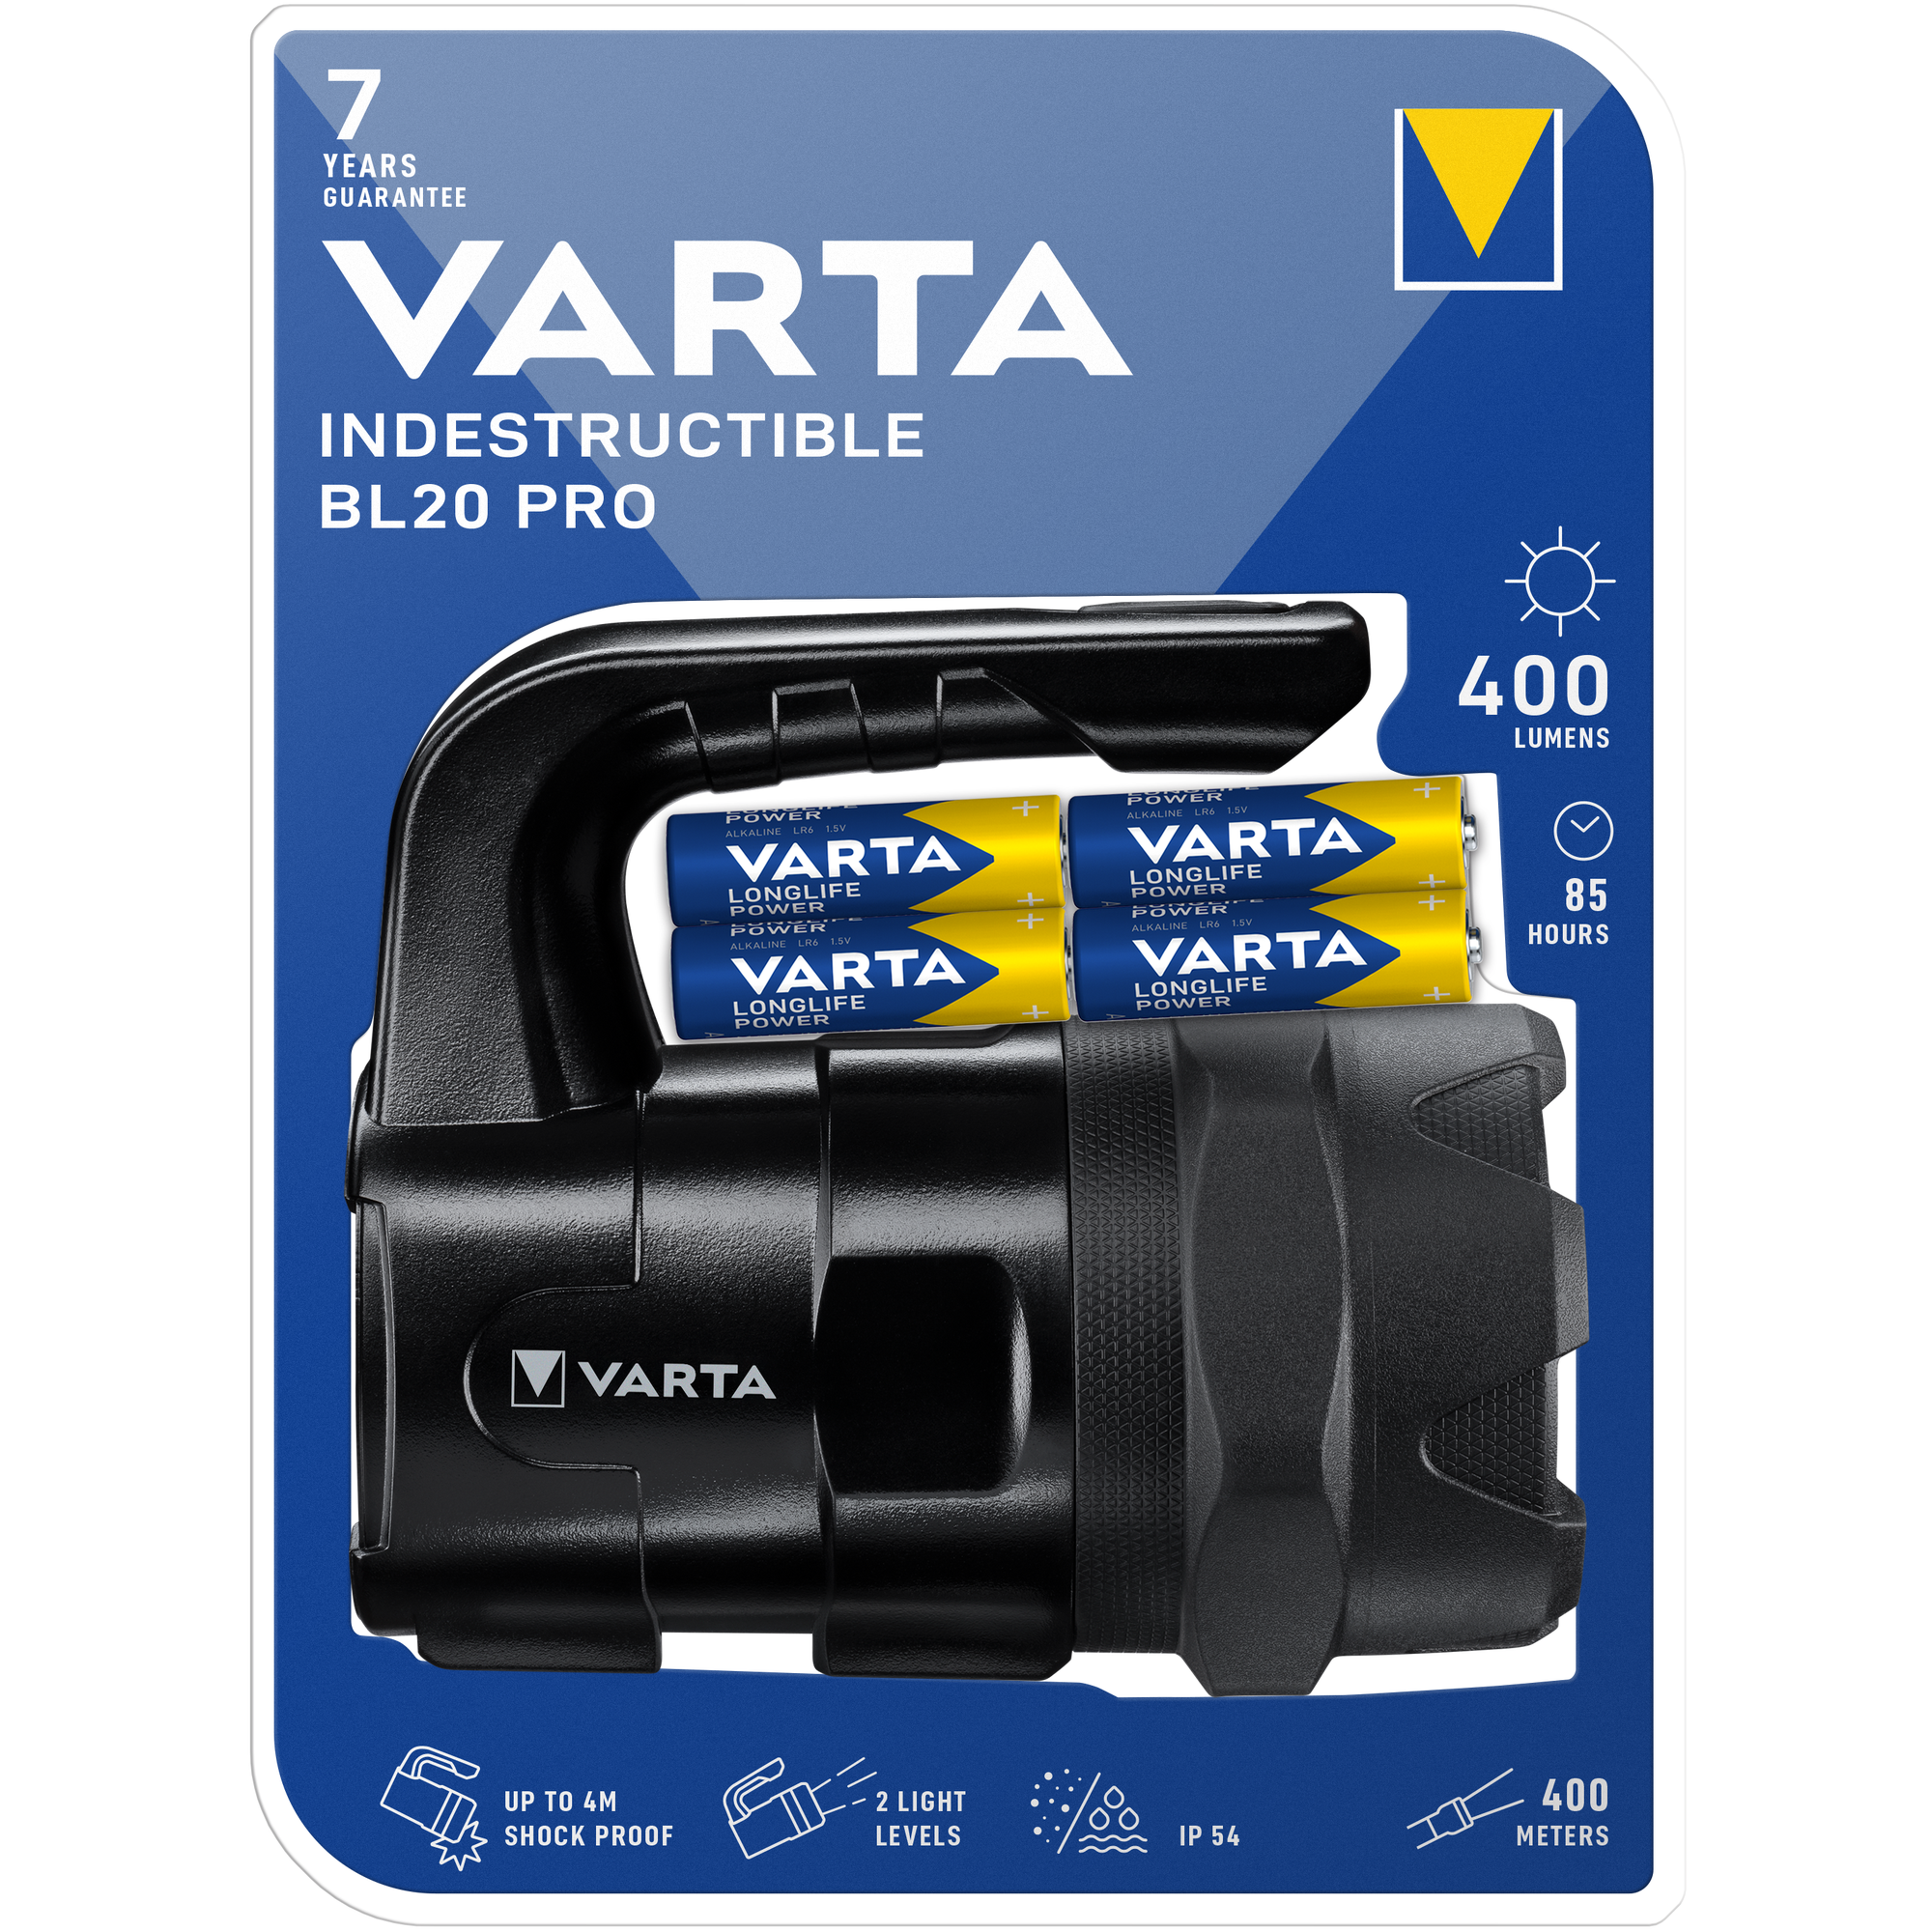 Projecteur indestructible LED portée 400m - VARTA - 18751101421 7